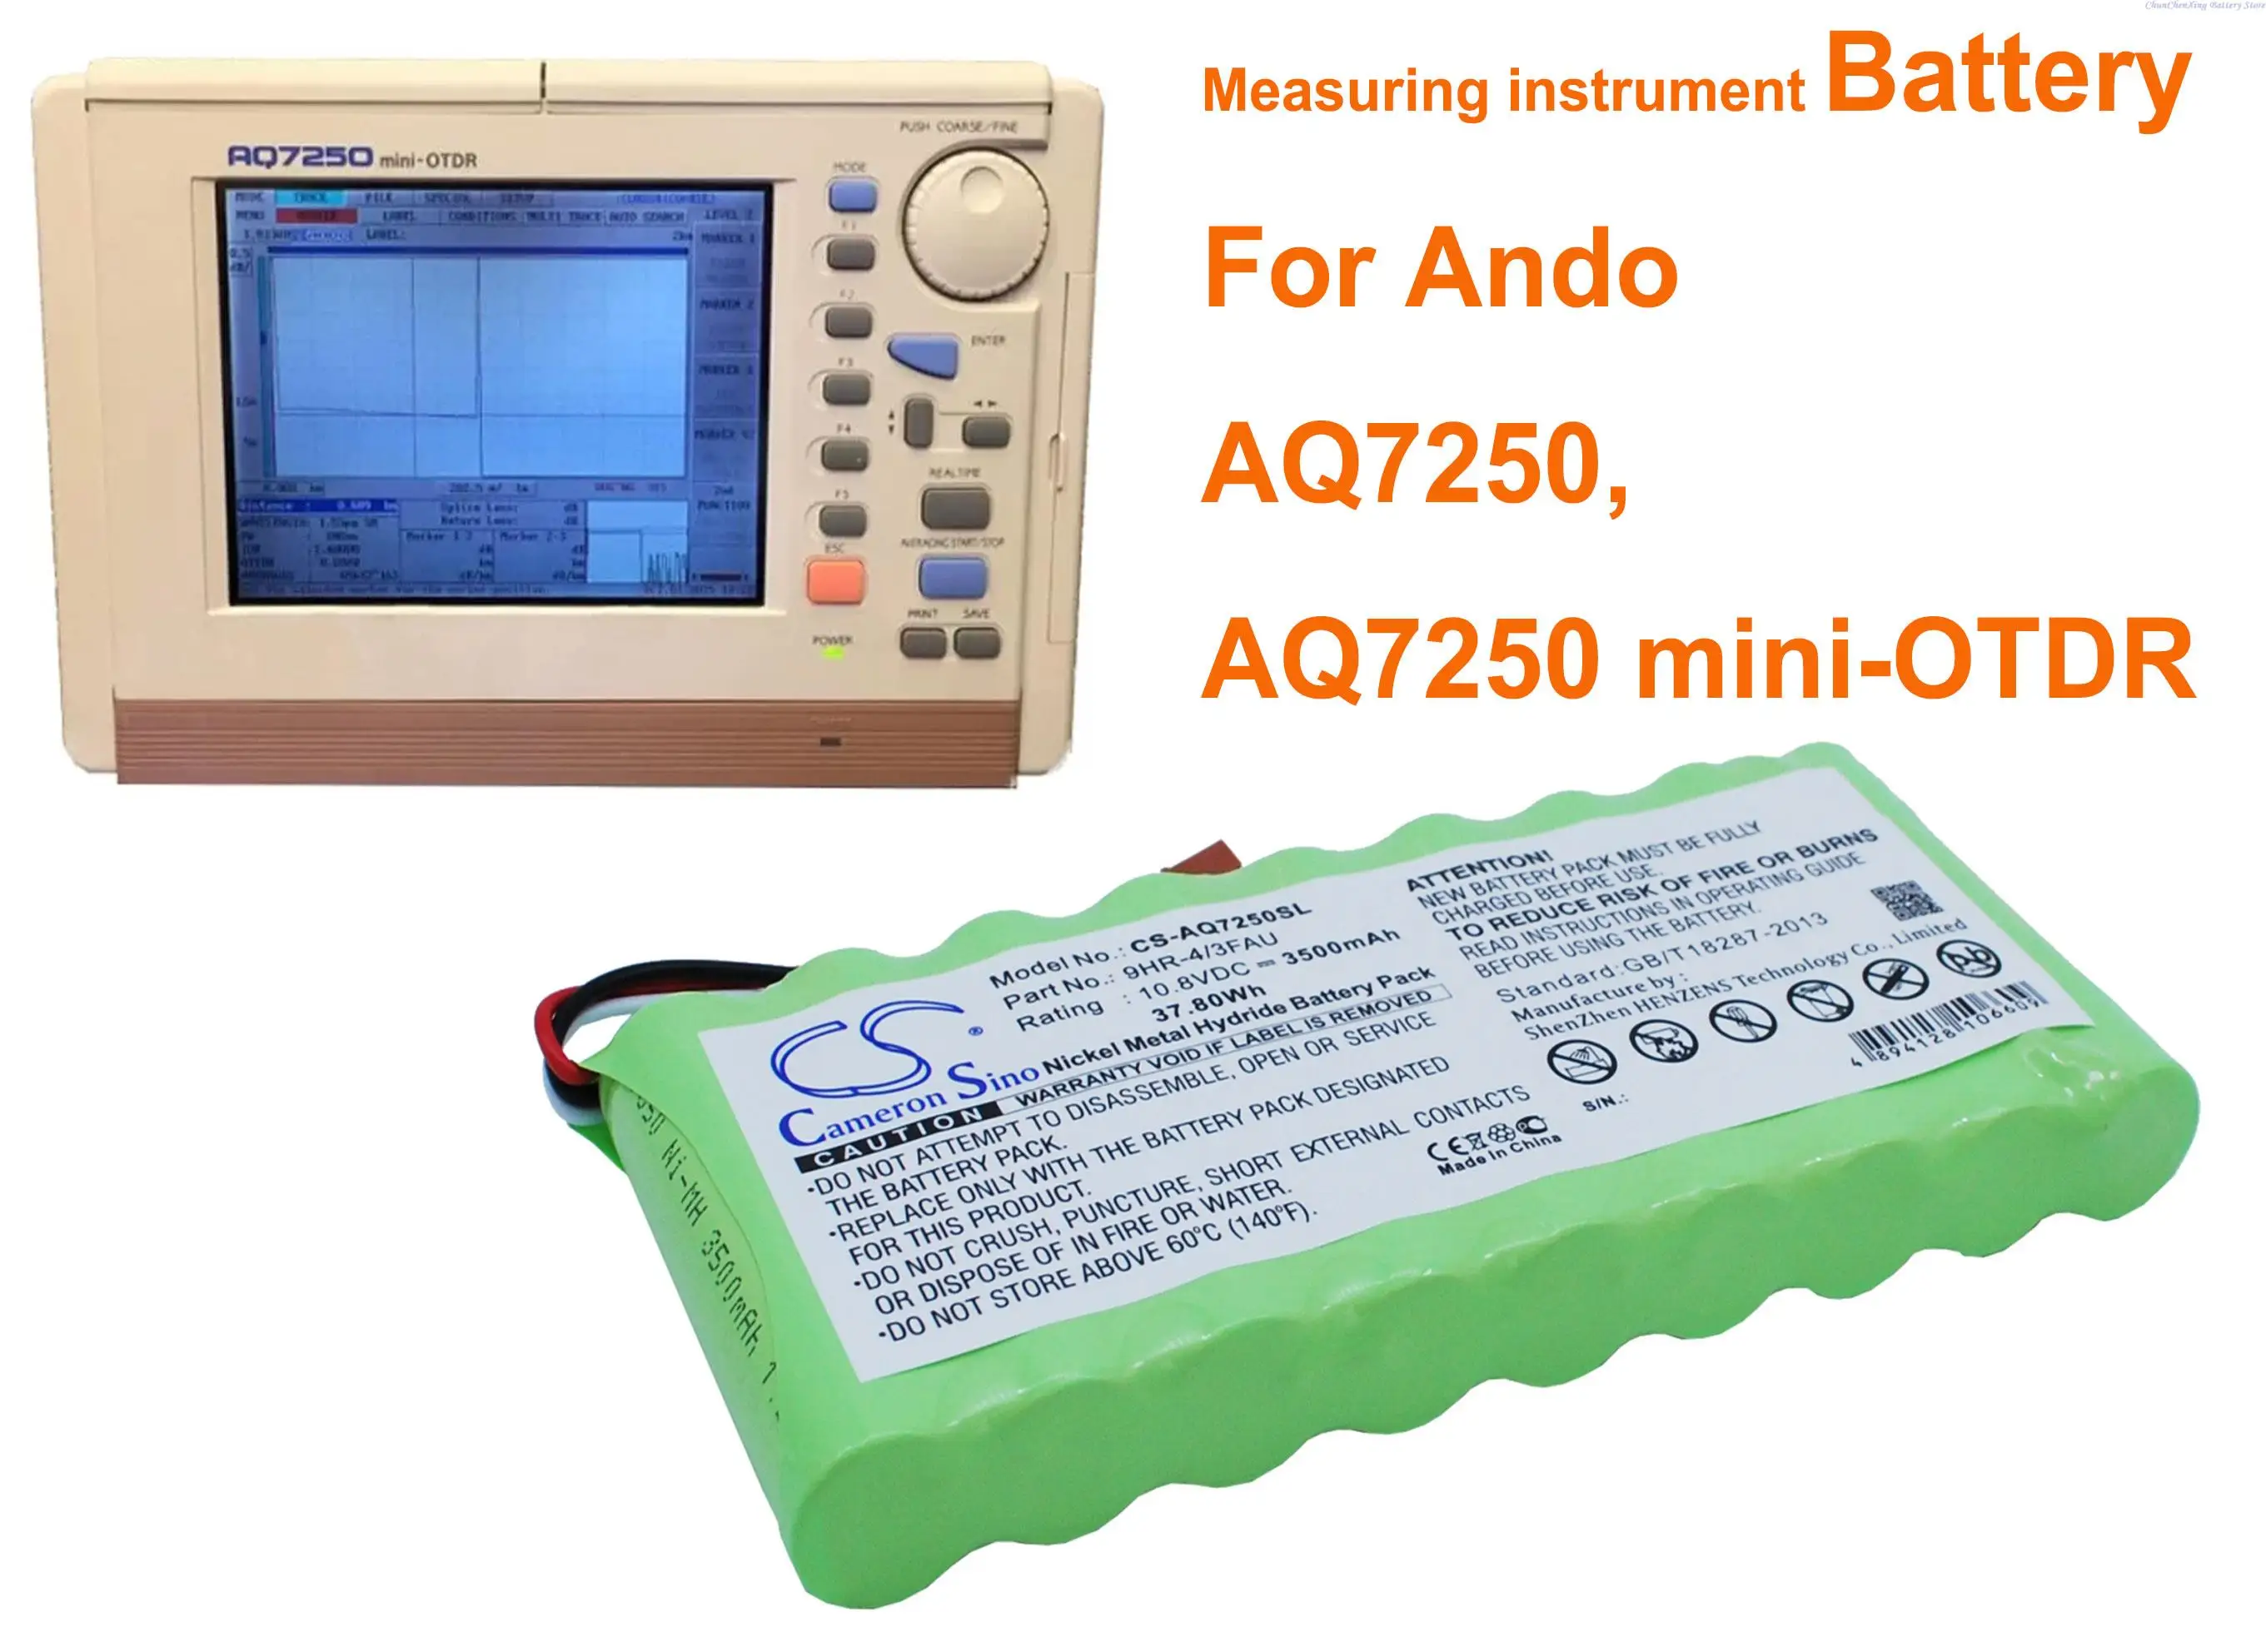 GreenBattery 3500 mAh ölçüm cihazı Pil 9HR-4 / 3FAU Ando AQ7250, AQ7250 mını-OTDR